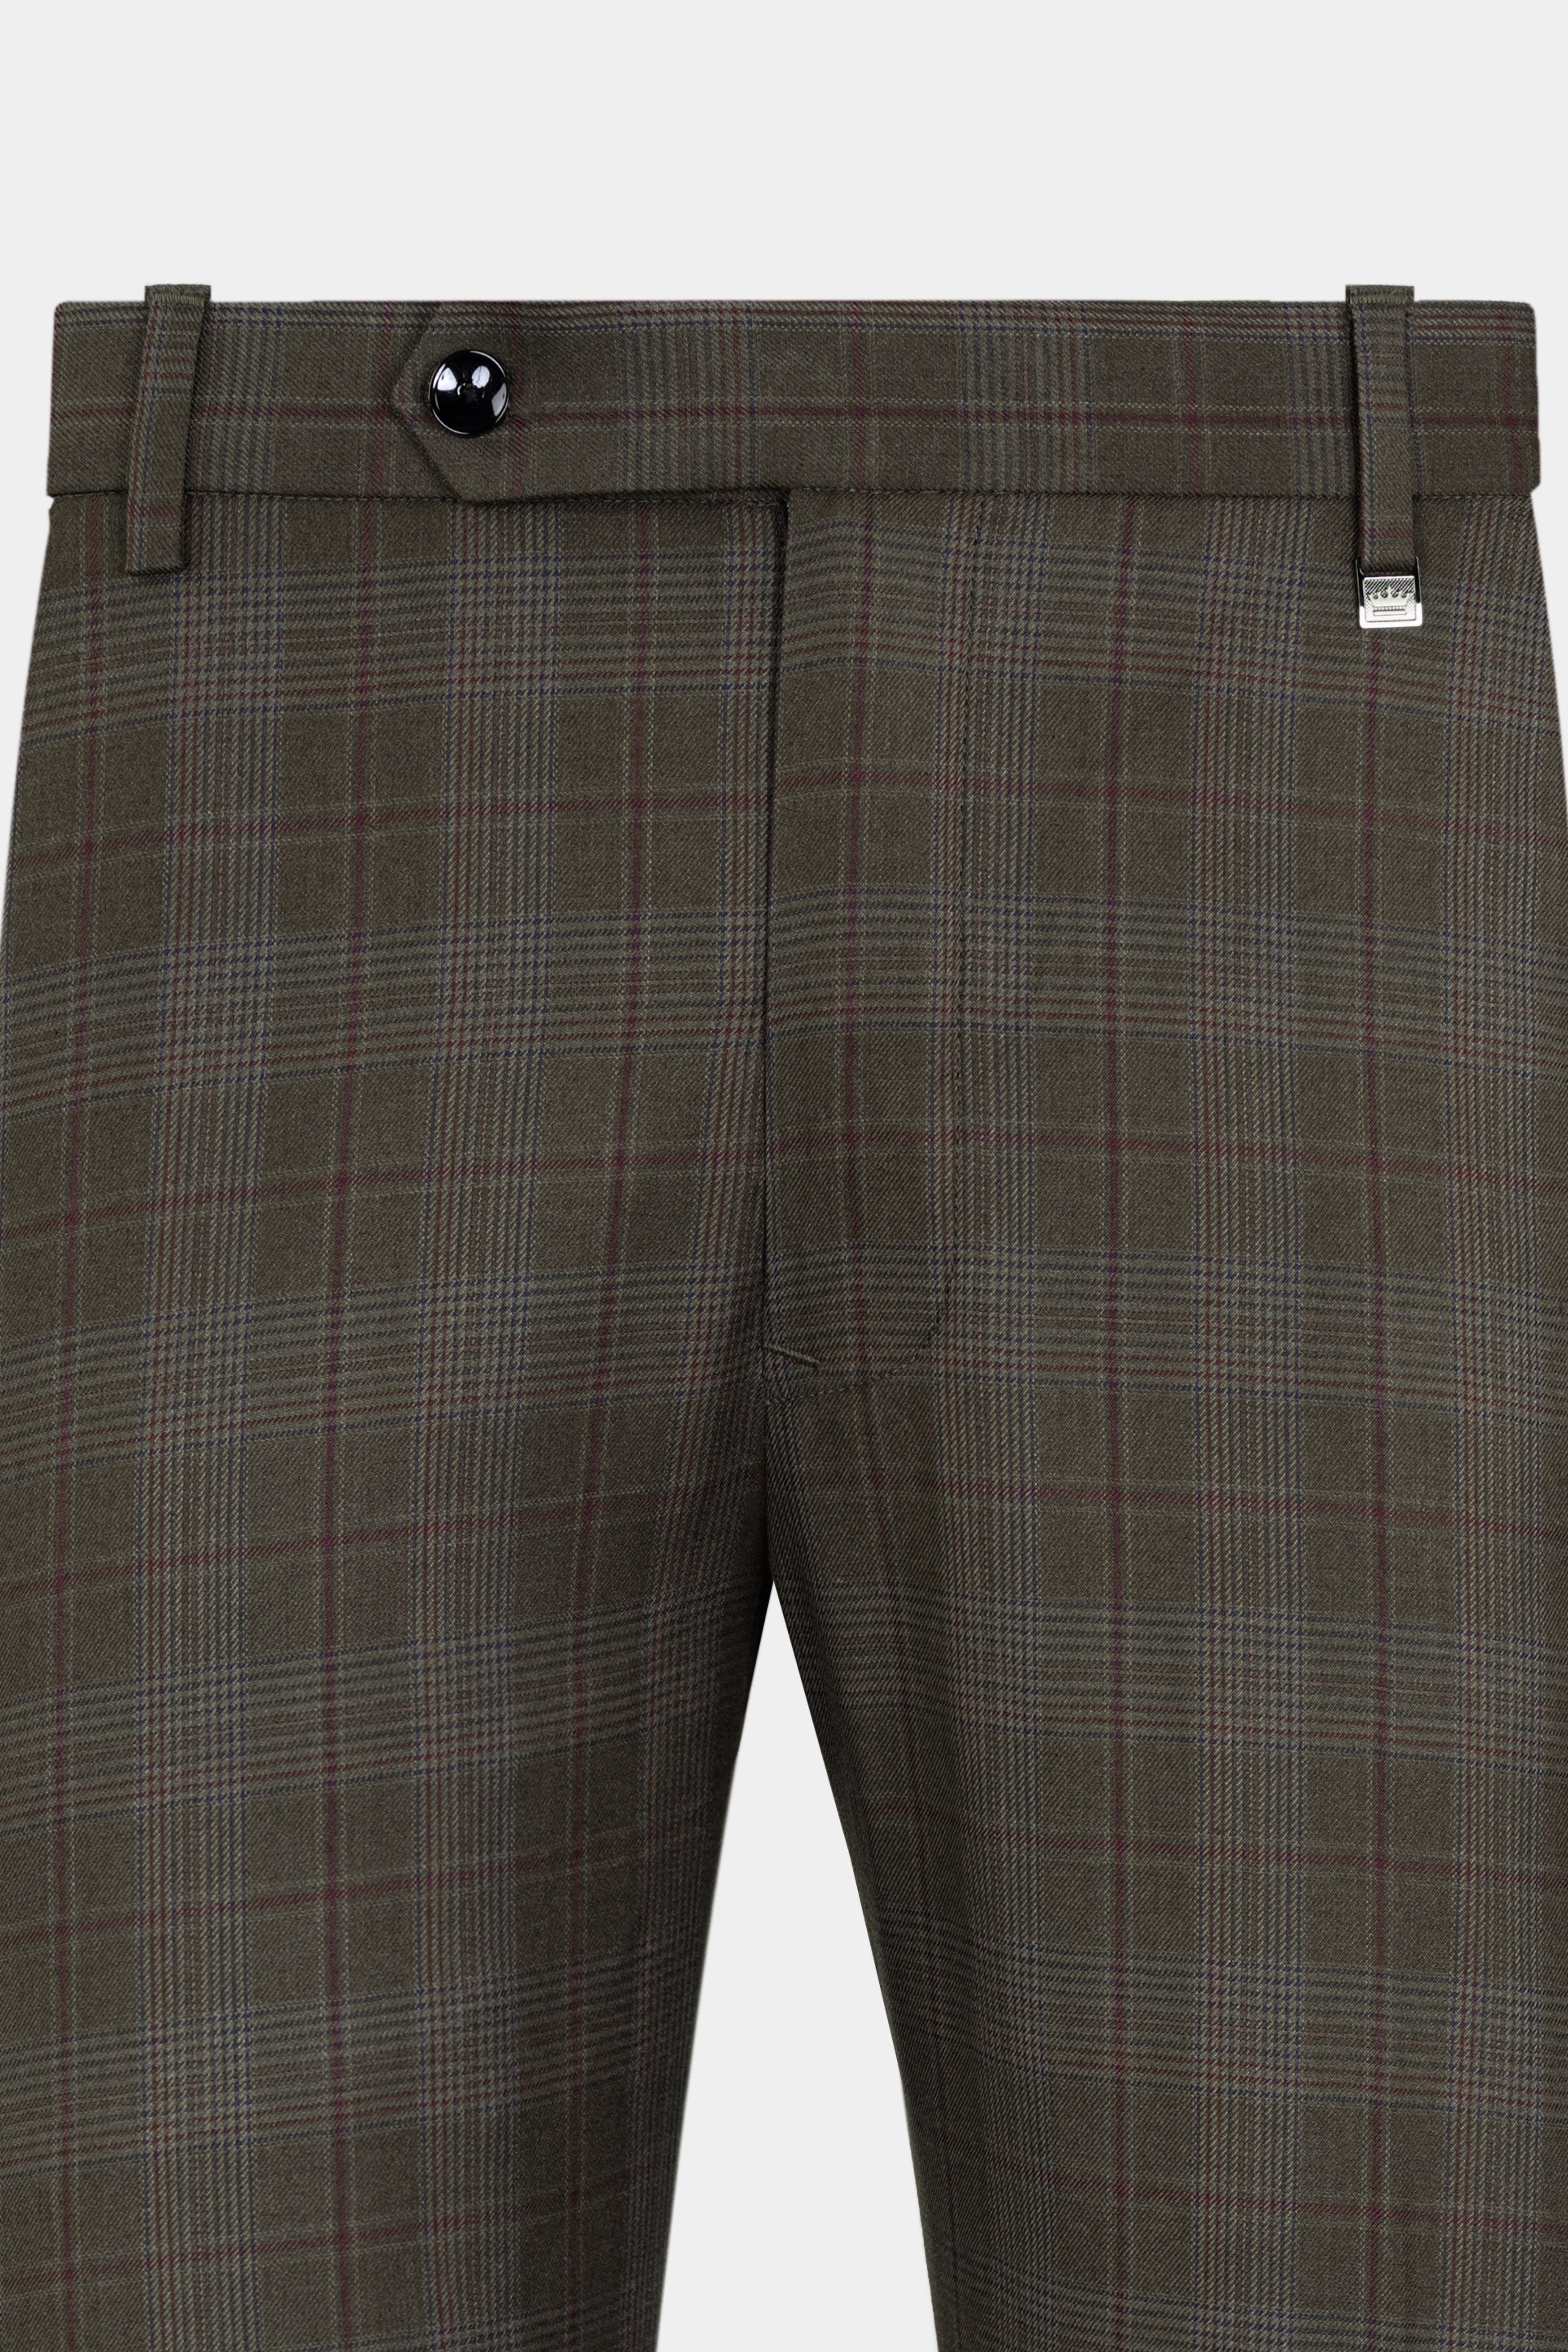 Unique Bargains Men's Plaid Pants Casual Slim Fit Flat Front Checked  Trousers - Walmart.com